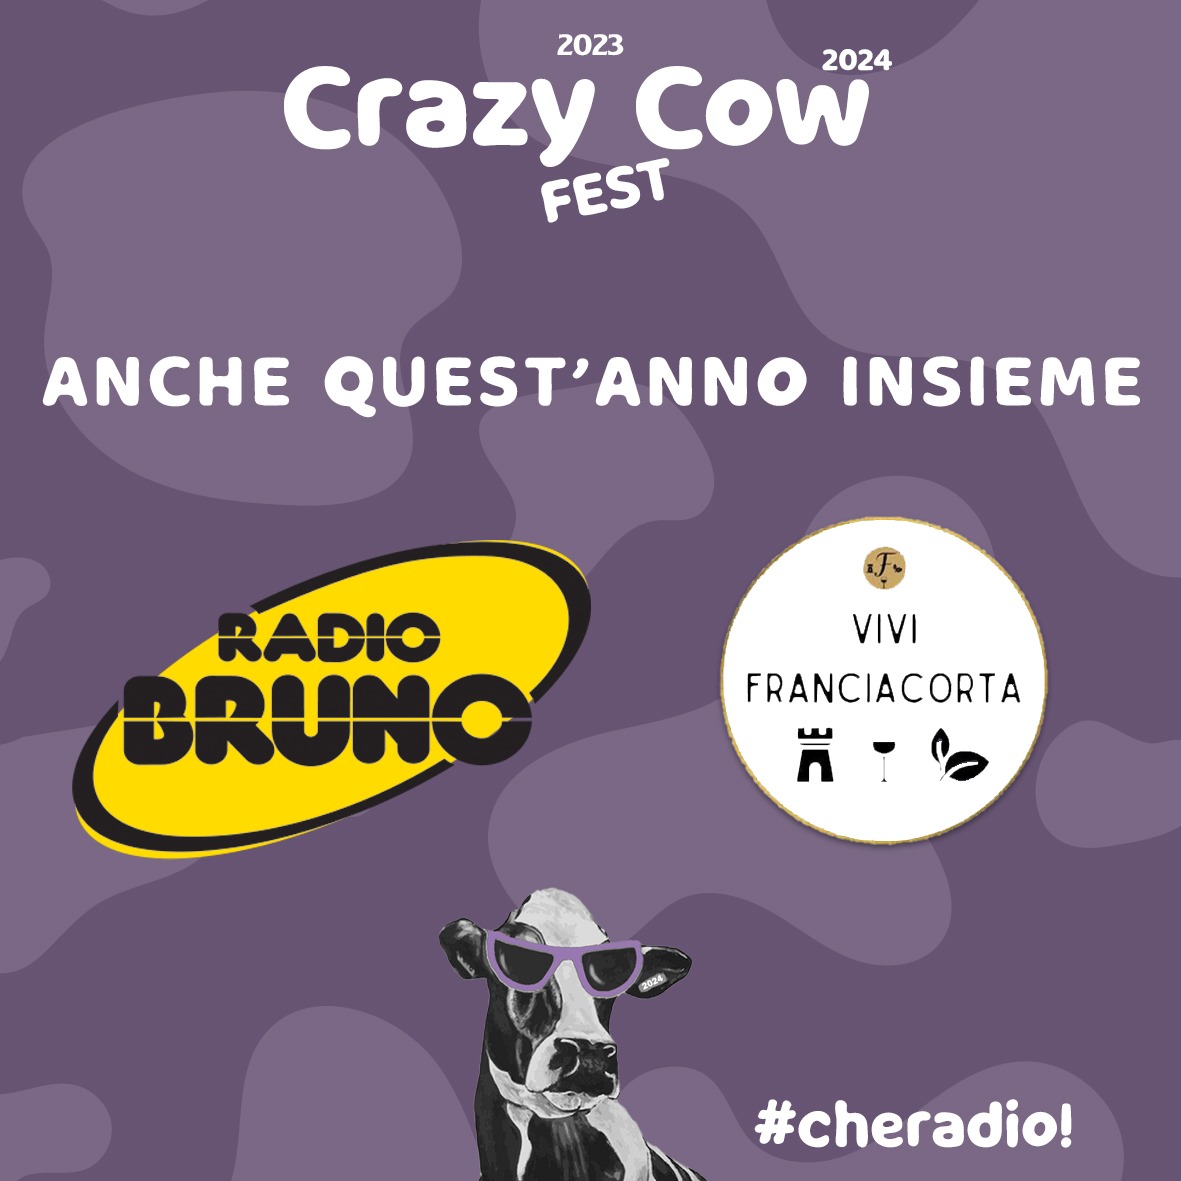 Dall'11 al 14 luglio torna la Crazy Cow Fest a Paderno Franciacorta: anche con Radio Bruno e Vivi Franciacorta!